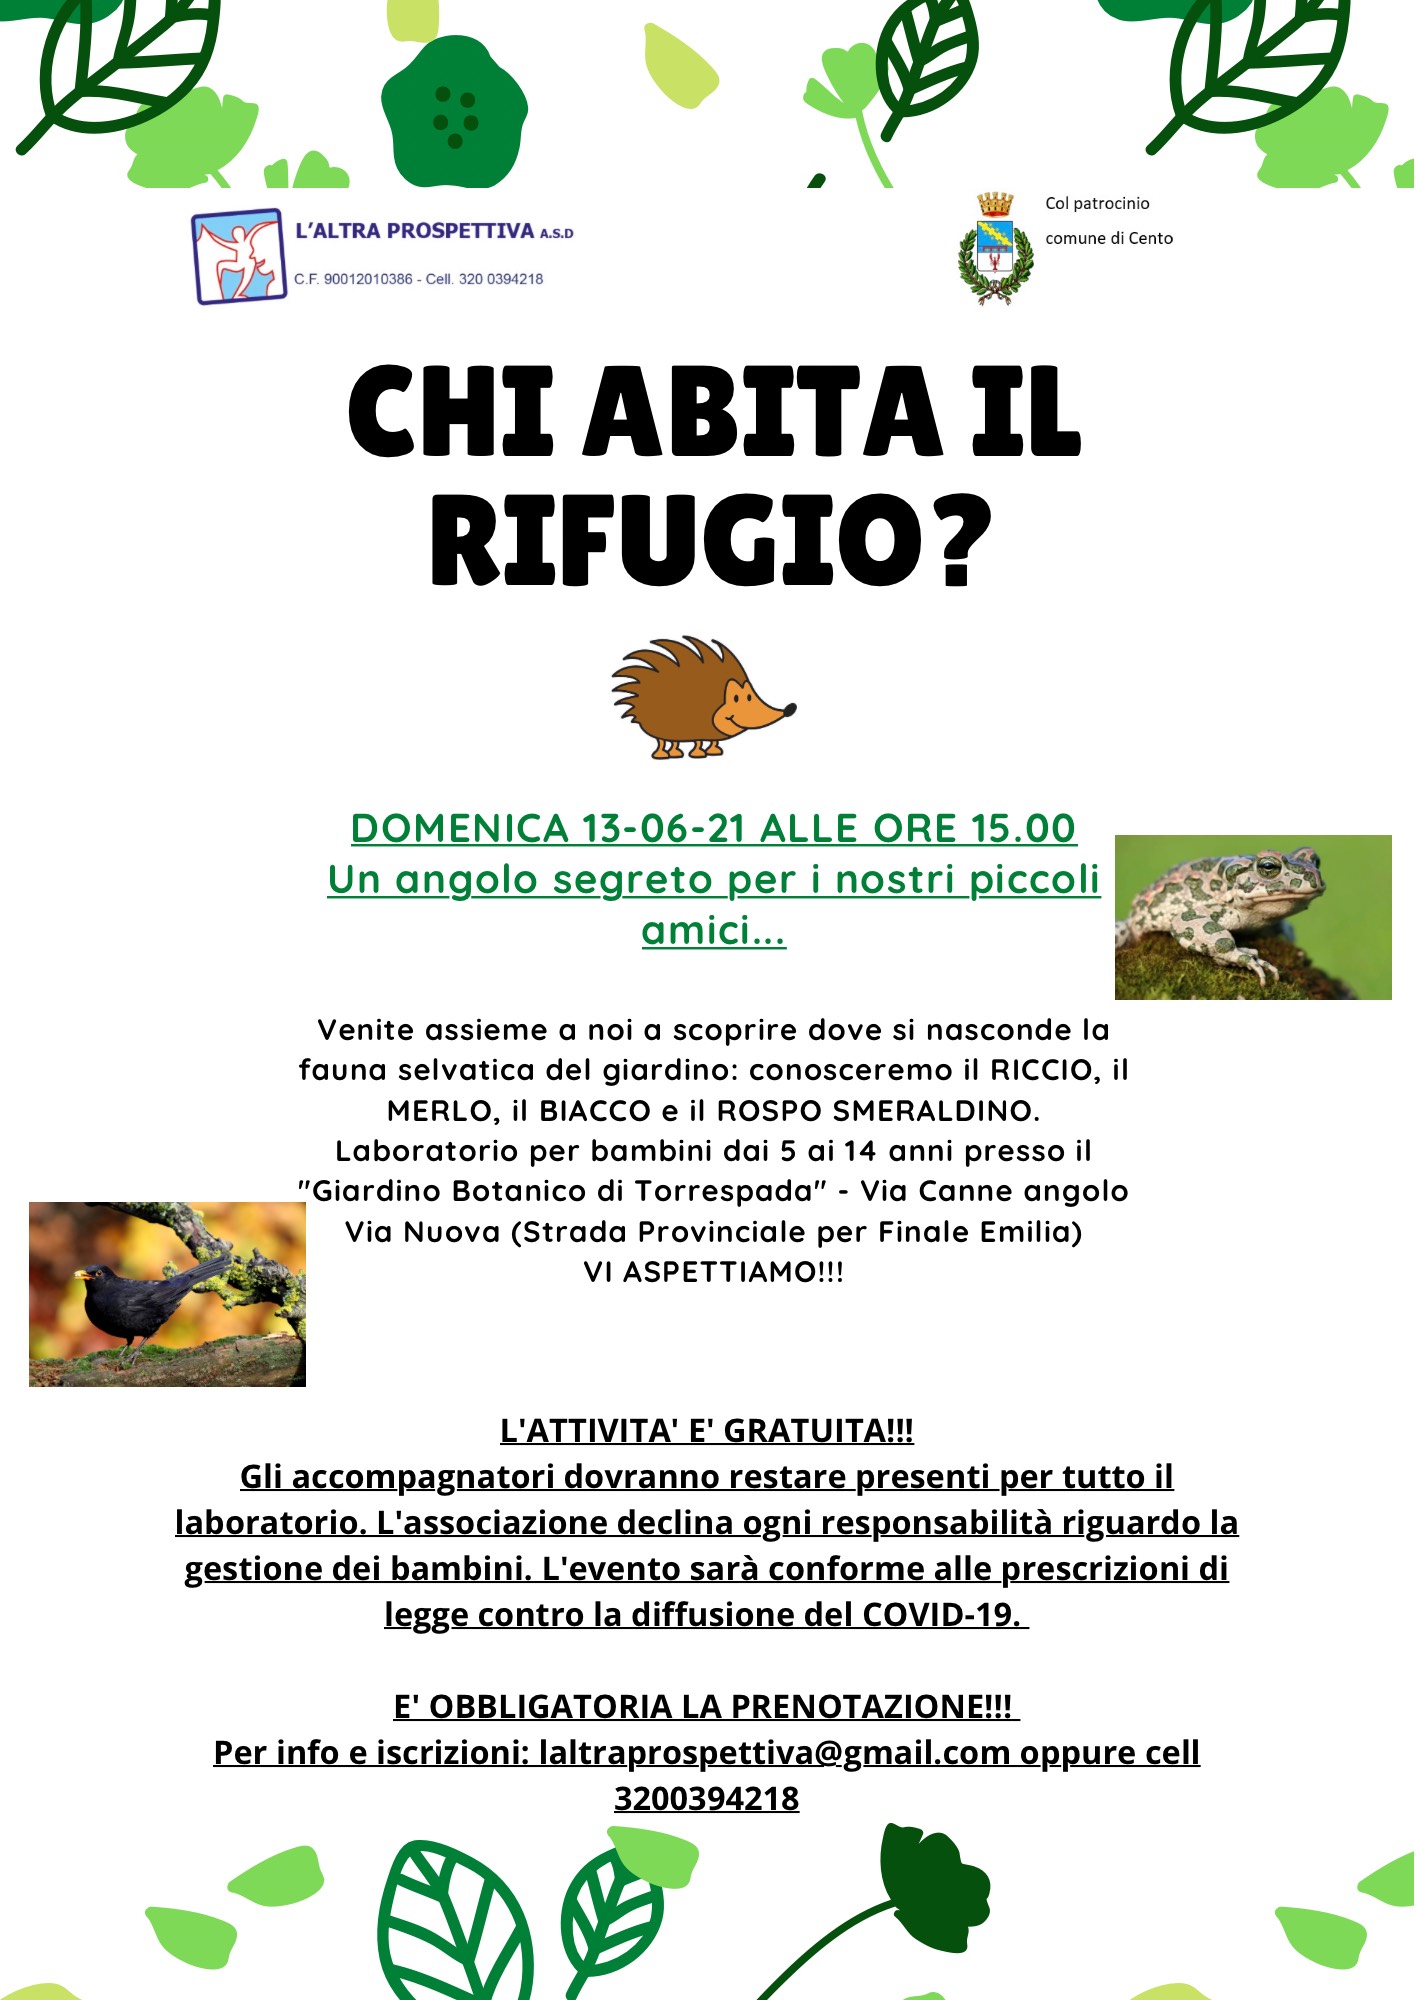 locandina dell'iniziativa con informazioni e fotografie del riccio e del rospo smeraldino